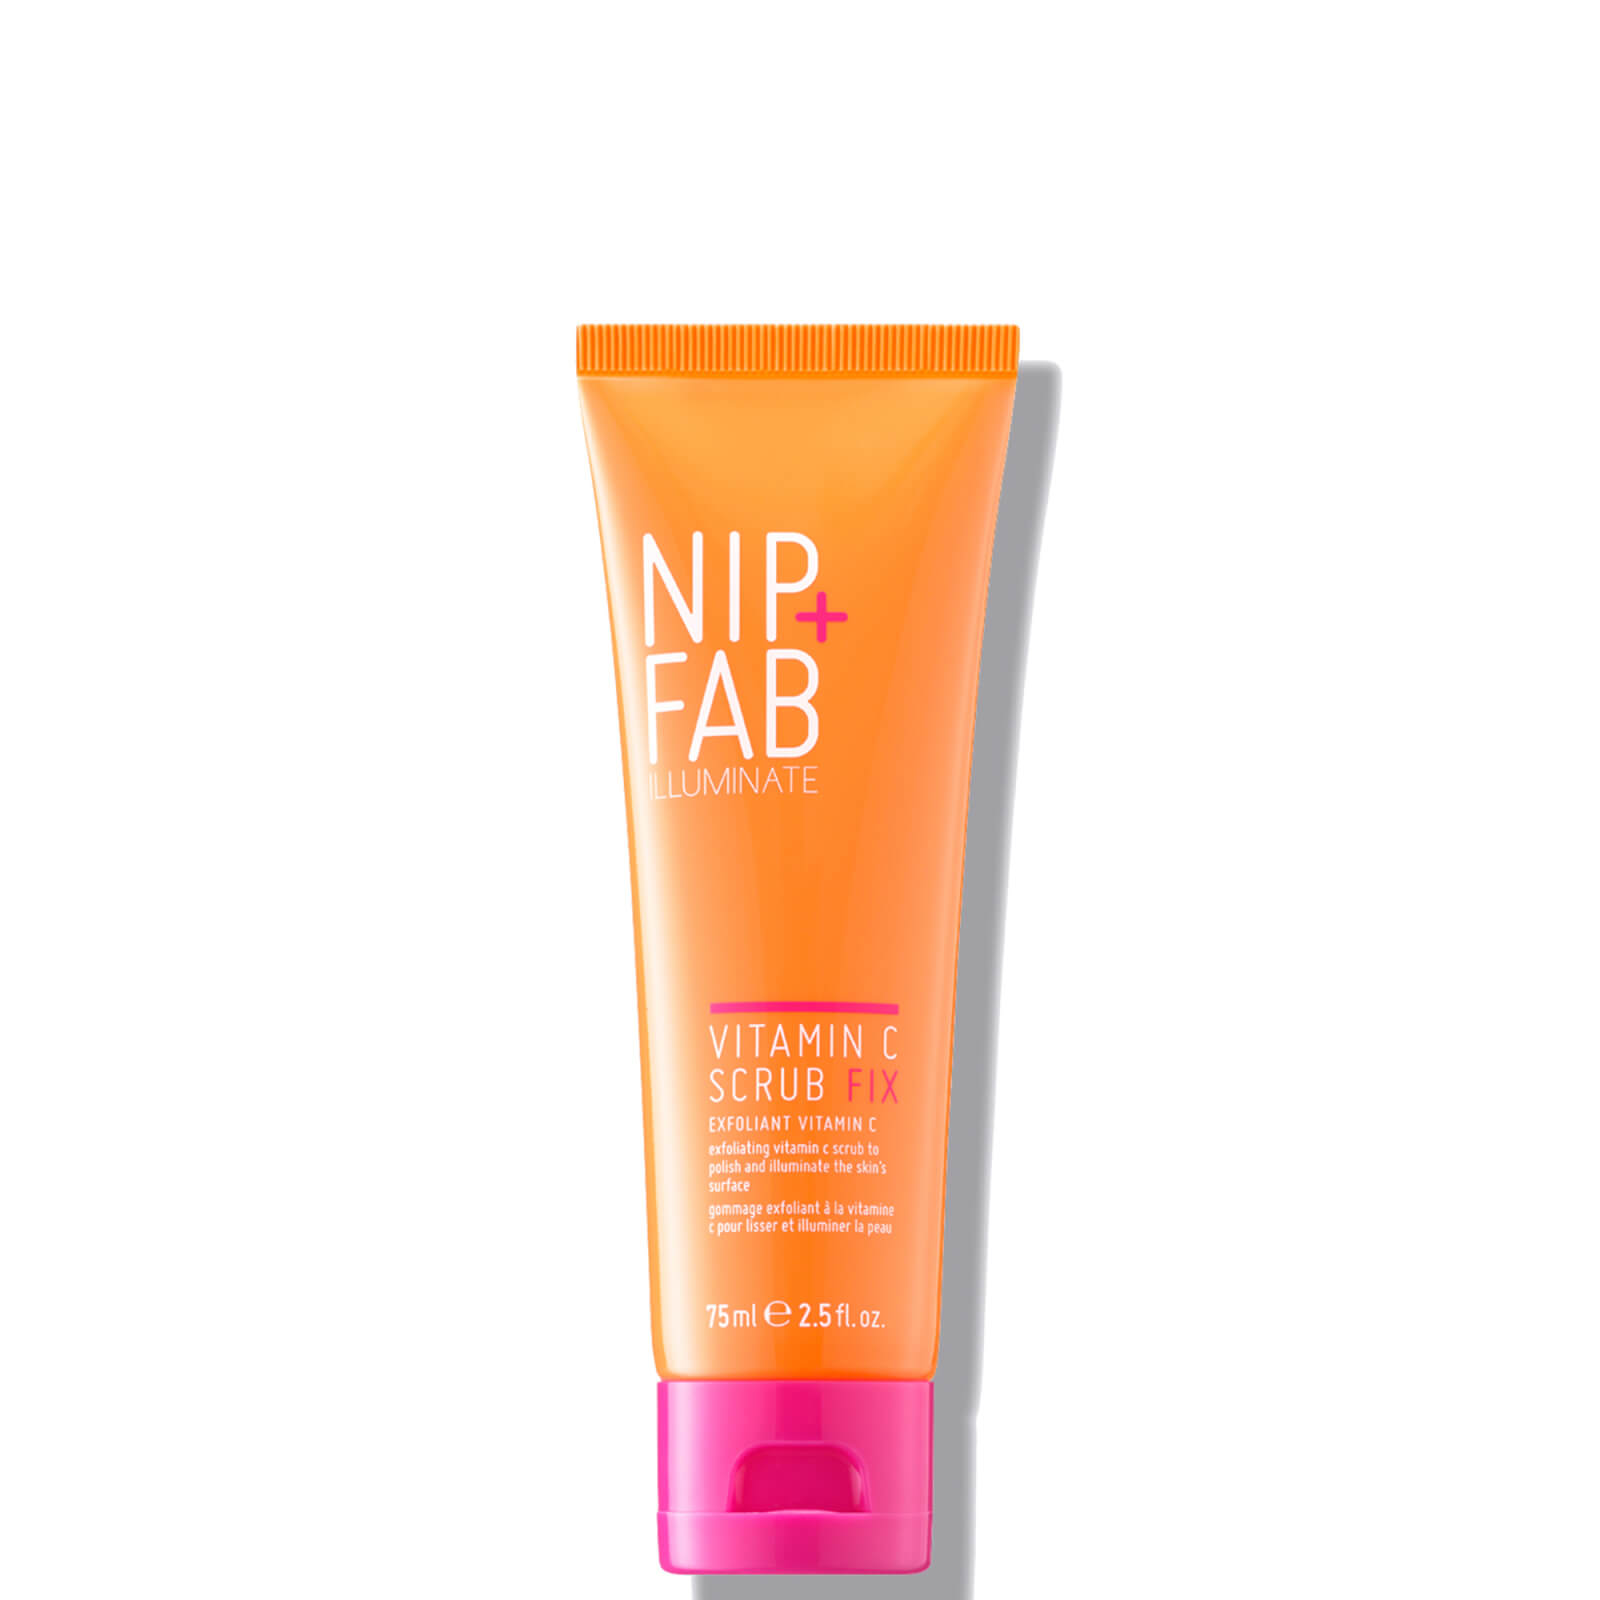 NIP+FAB Vitamin C Fix Scrub 75m